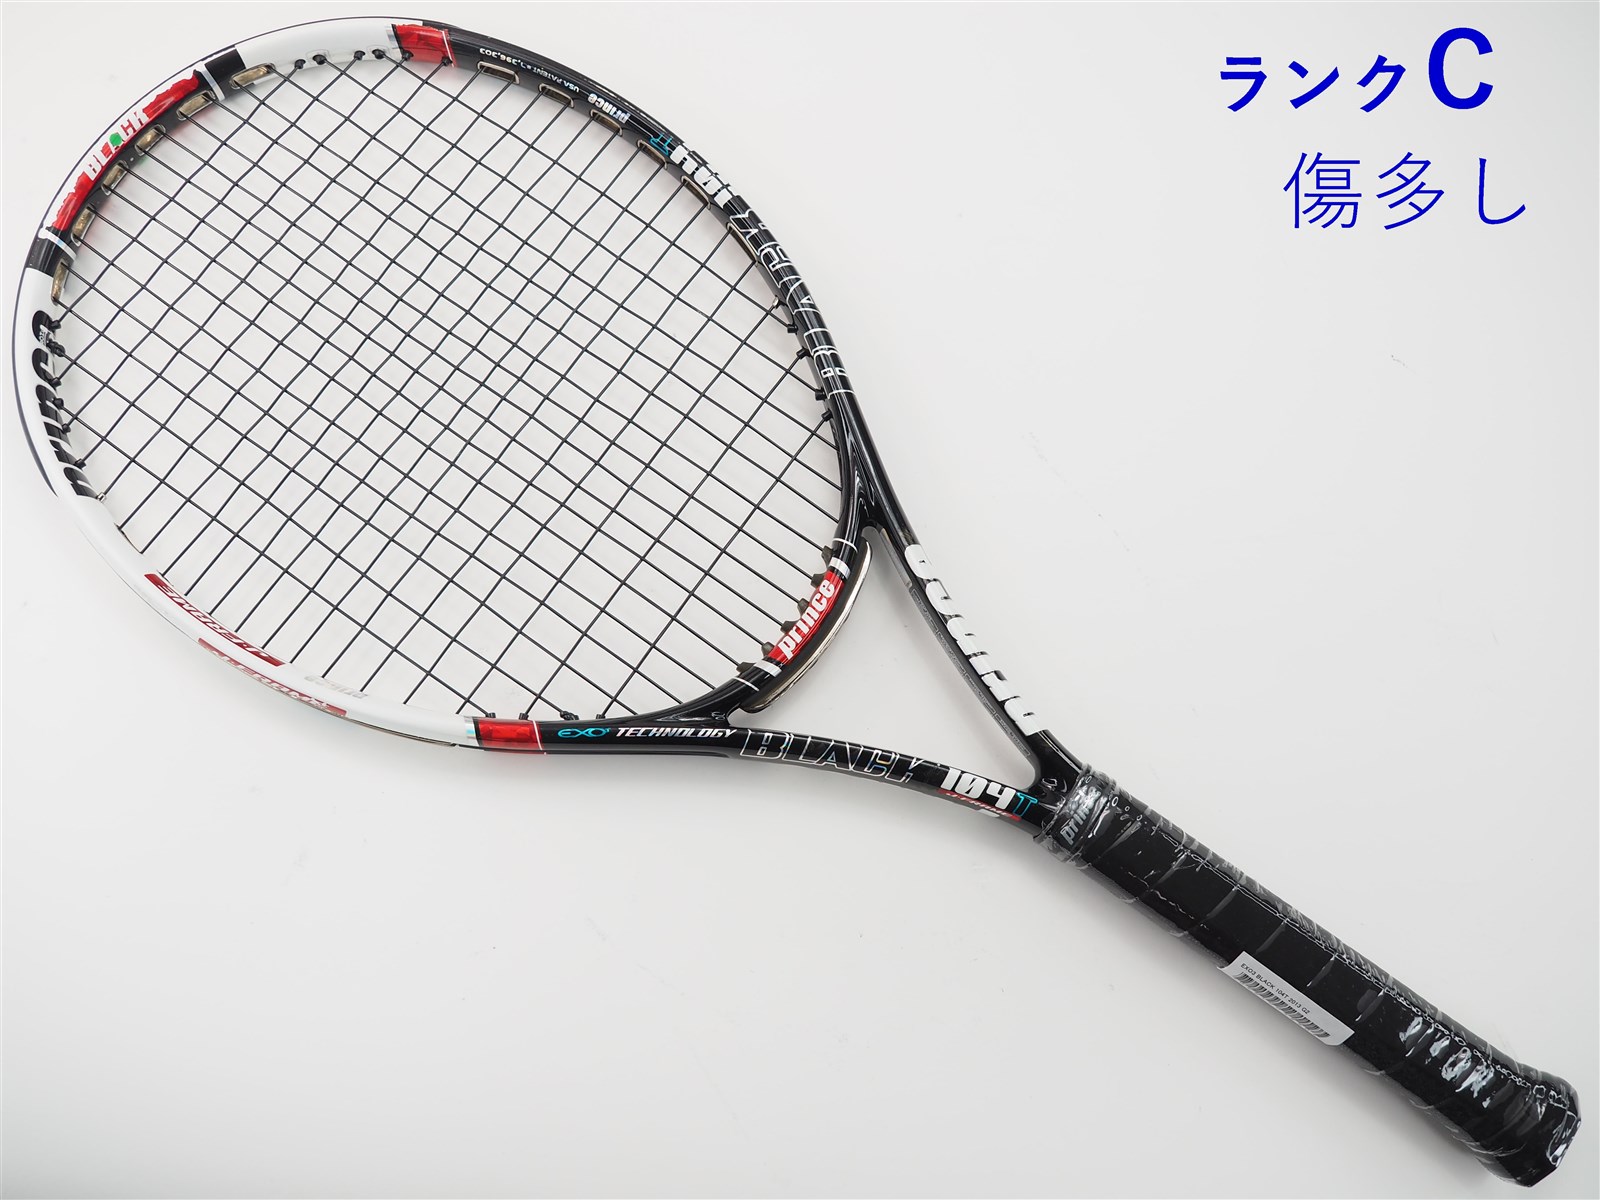 2725インチフレーム厚テニスラケット プリンス イーエックスオースリー グラファイト 105T 2013年モデル (G1)PRINCE EXO3 GRAPHITE 105T 2013